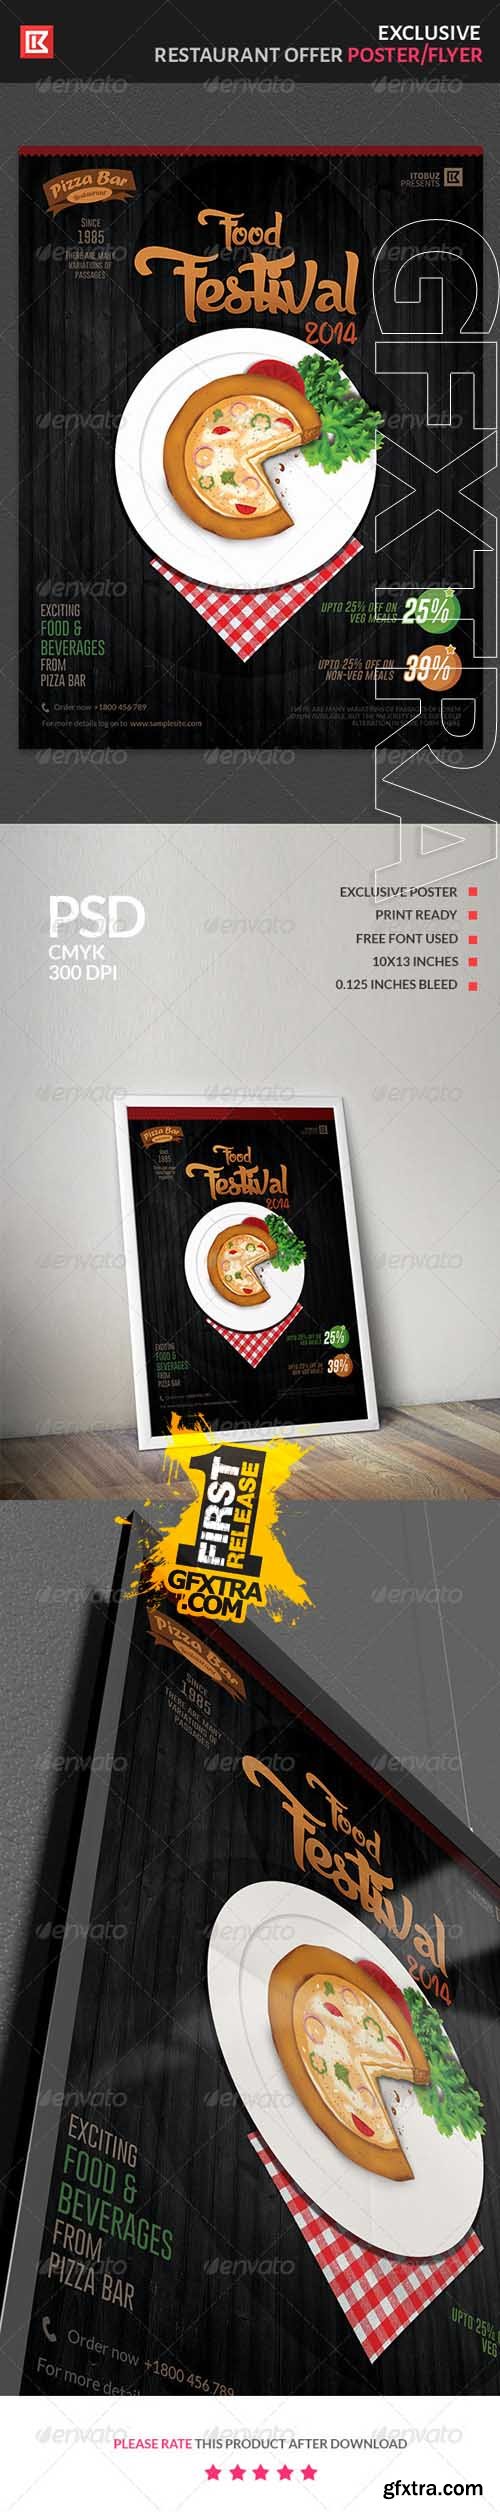 GR - Food and Beverage Restaurant Offer Poster/Flyer 7548254